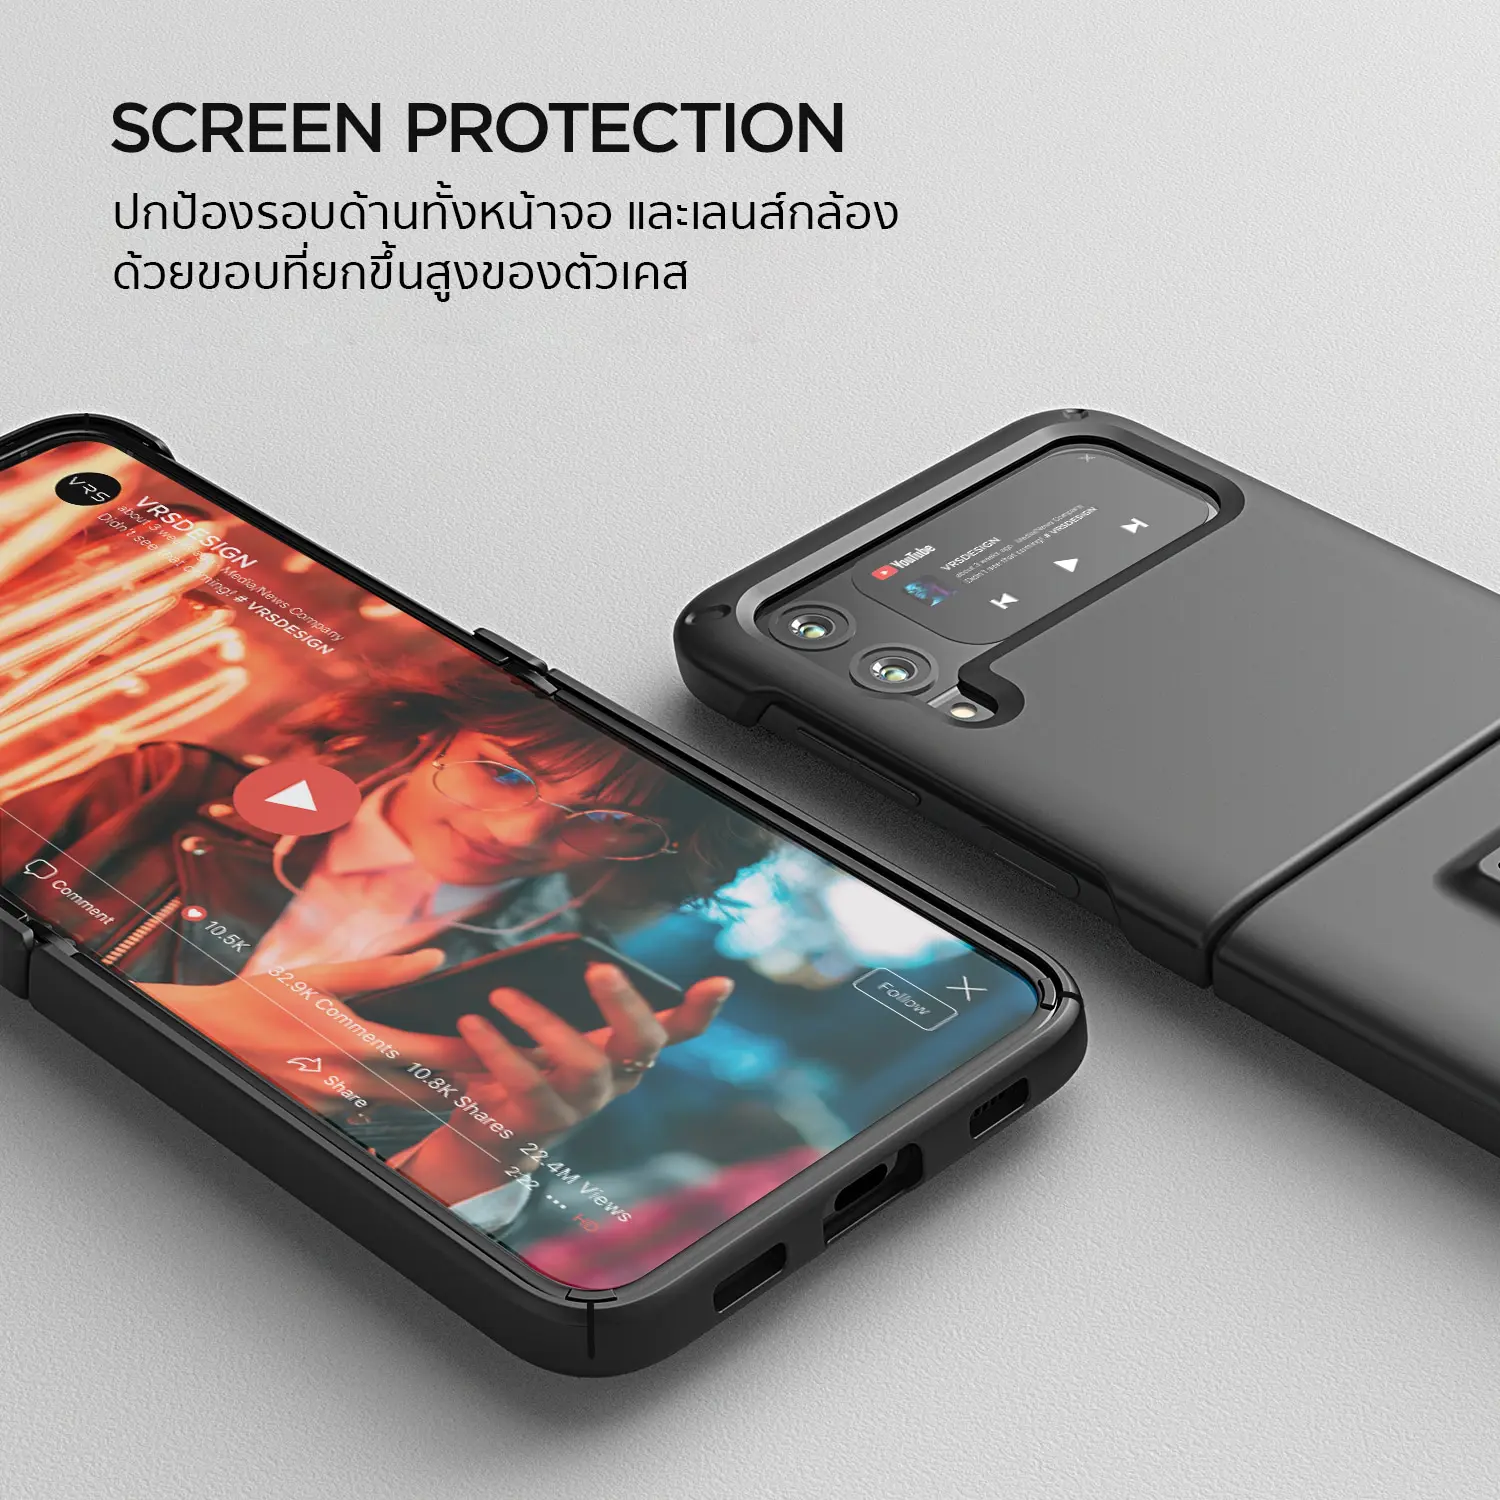 เคสกันกระแทก VRS รุ่น Quick Stand Modern - Galaxy Z Flip 3 - Clear